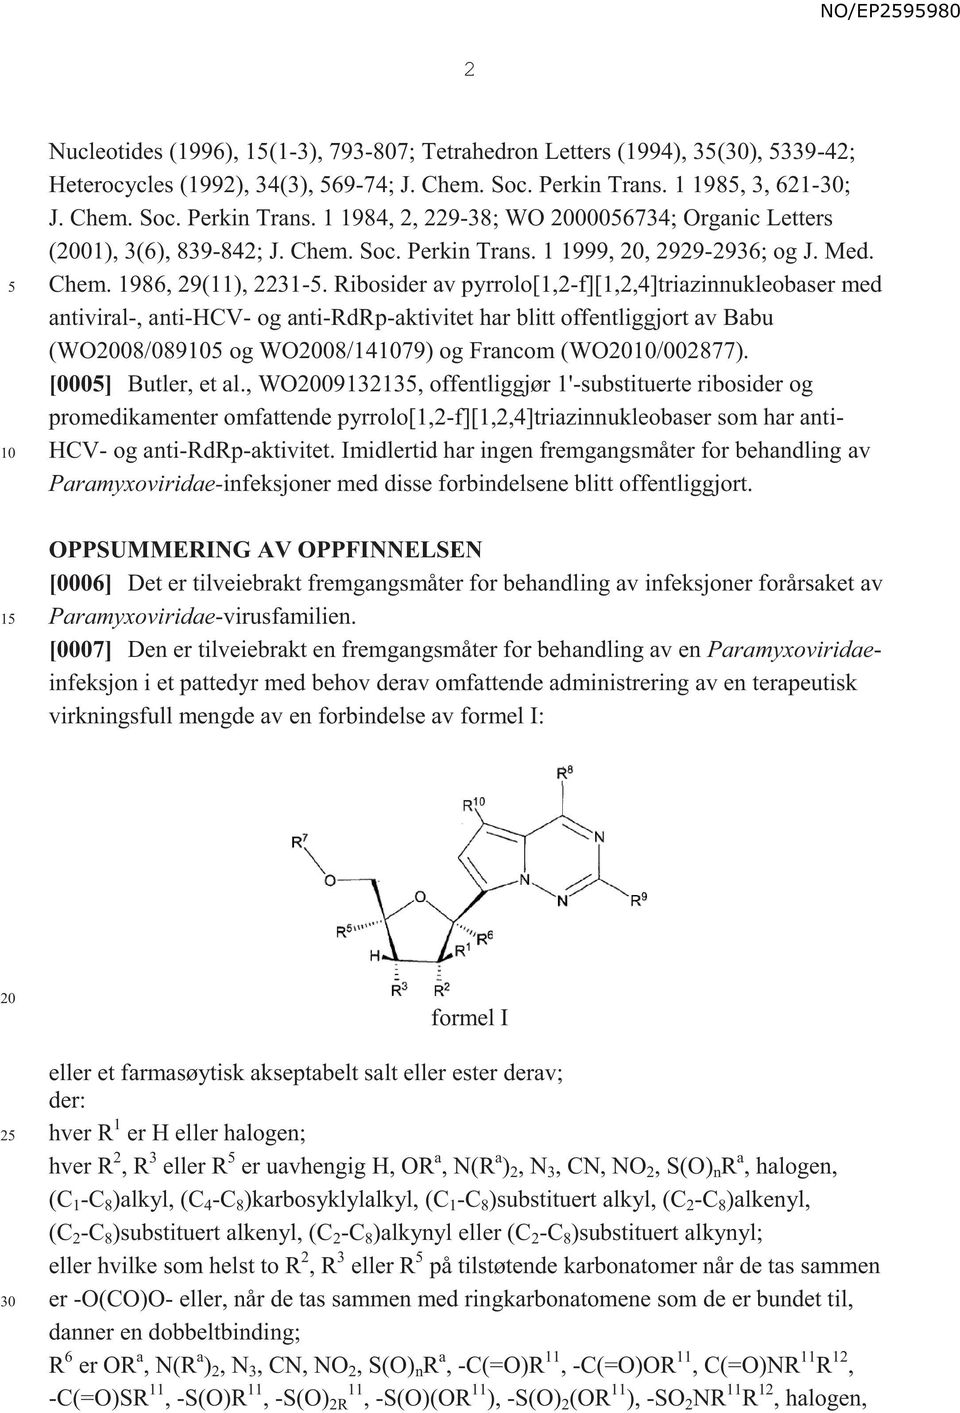 Ribosider av pyrrolo[1,2-f][1,2,4]triazinnukleobaser med antiviral-, anti-hcv- og anti-rdrp-aktivitet har blitt offentliggjort av Babu (WO08/089 og WO08/1479) og Francom (WO/002877).